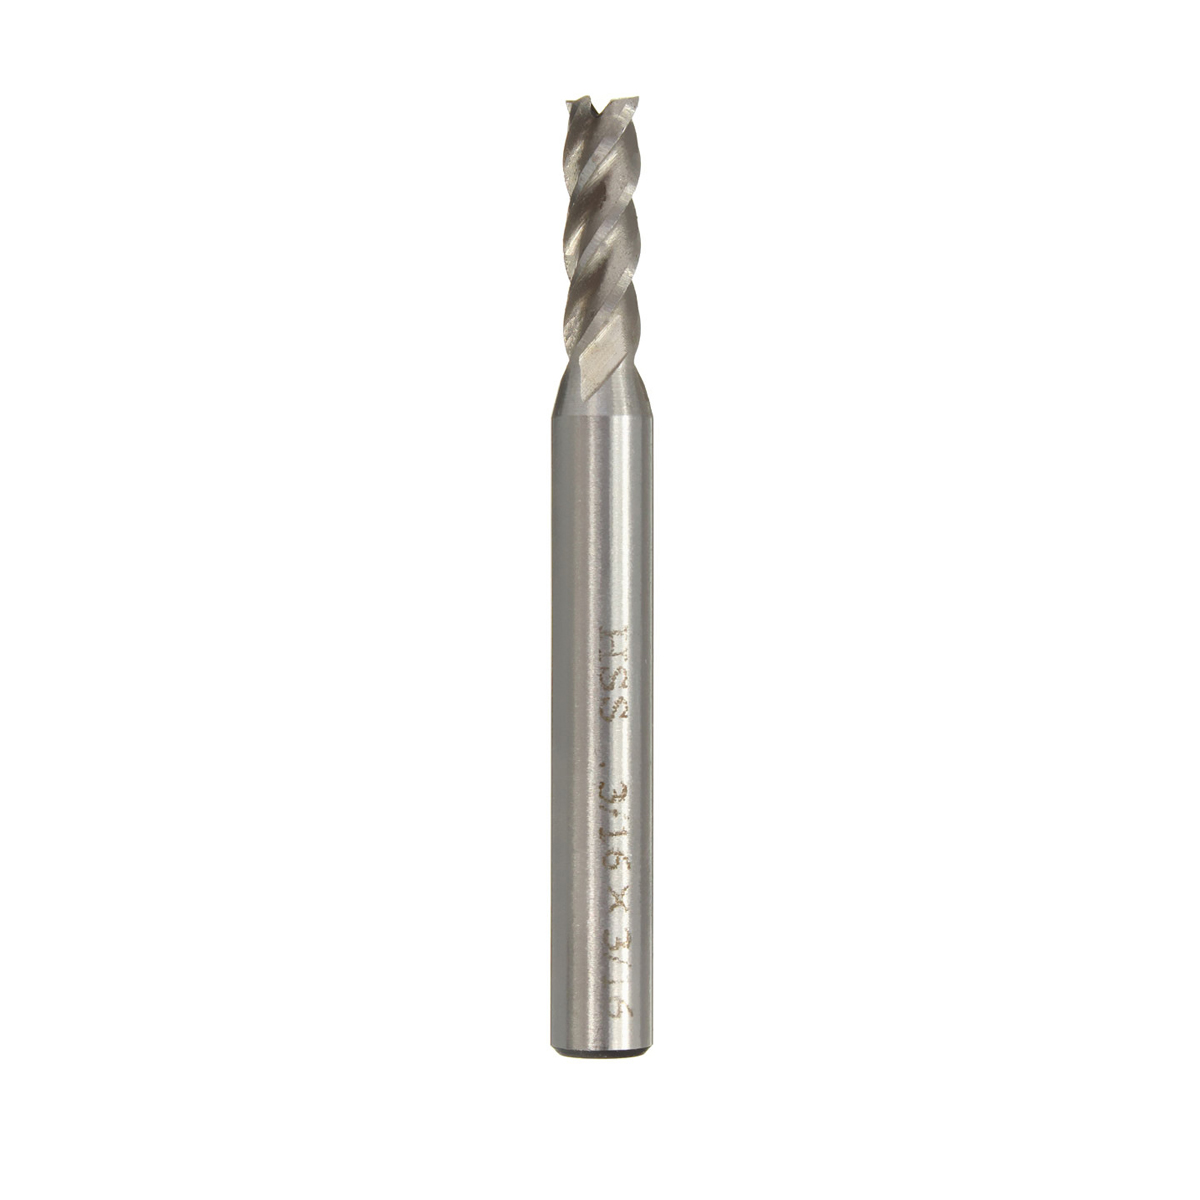 Drillpro 1x HSS CNC Straight Shank 4 Flute Endmill Milling Cutter Drill Bit 3/16''x1/4''